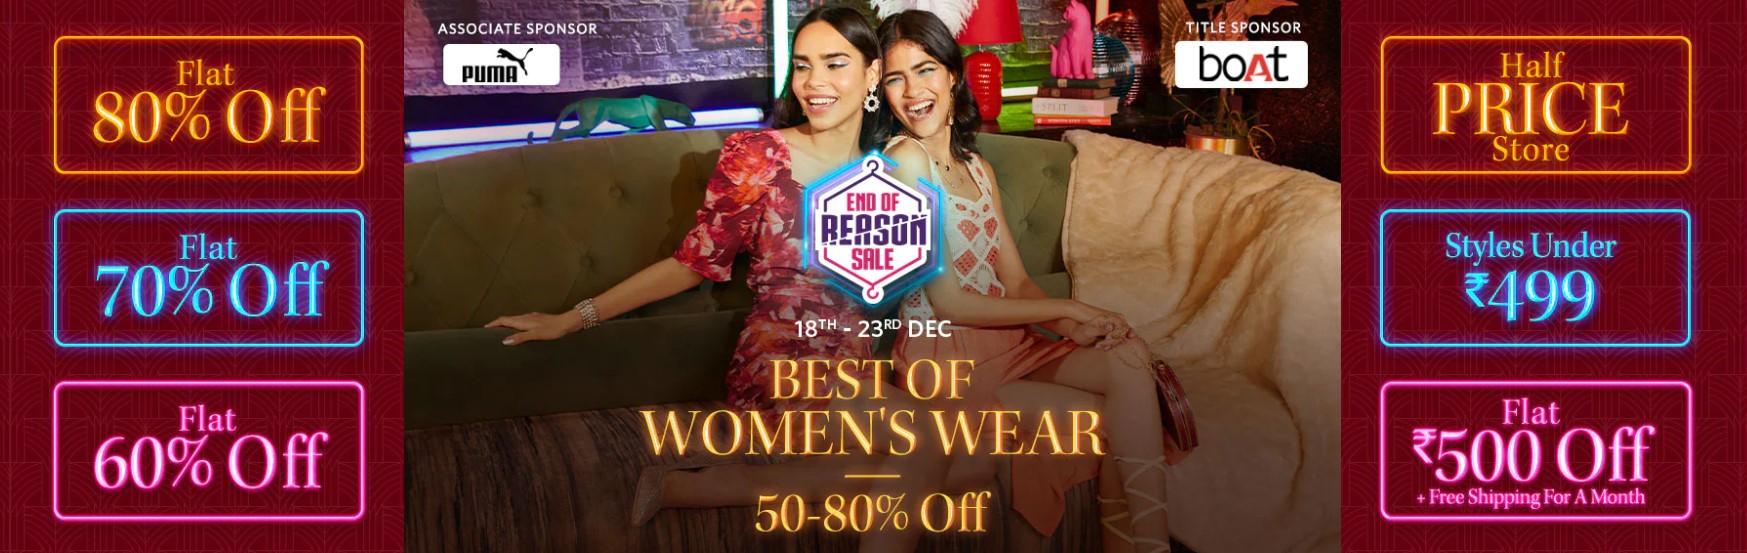 Myntra End Of Reason Sale Offers on Women's Wear